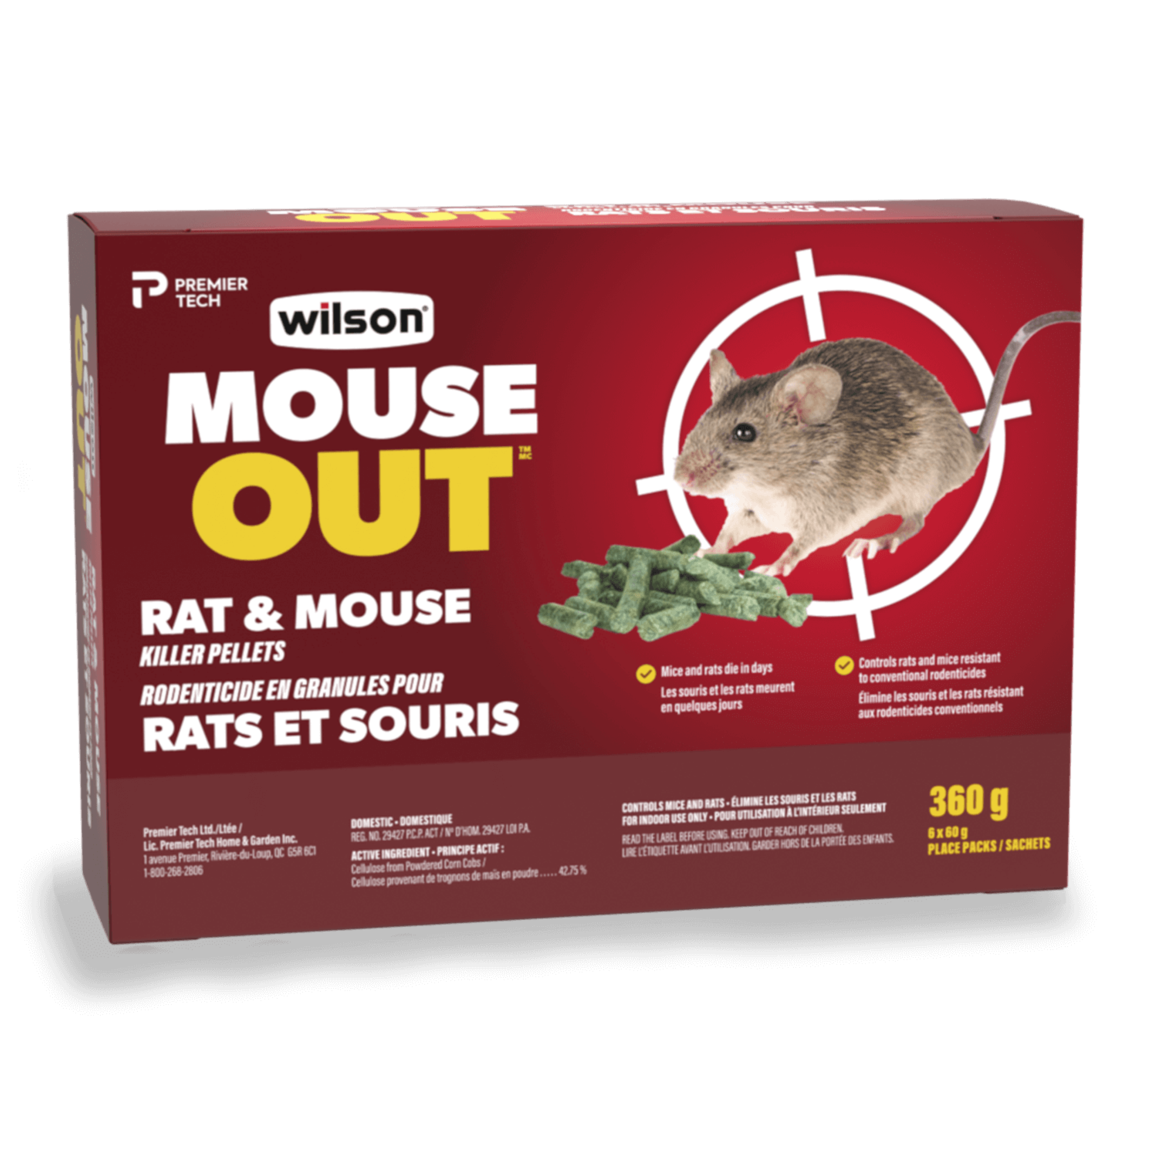 Rodenticide en granules pour rats et souris MOUSE OUT de Wilson (360 g)